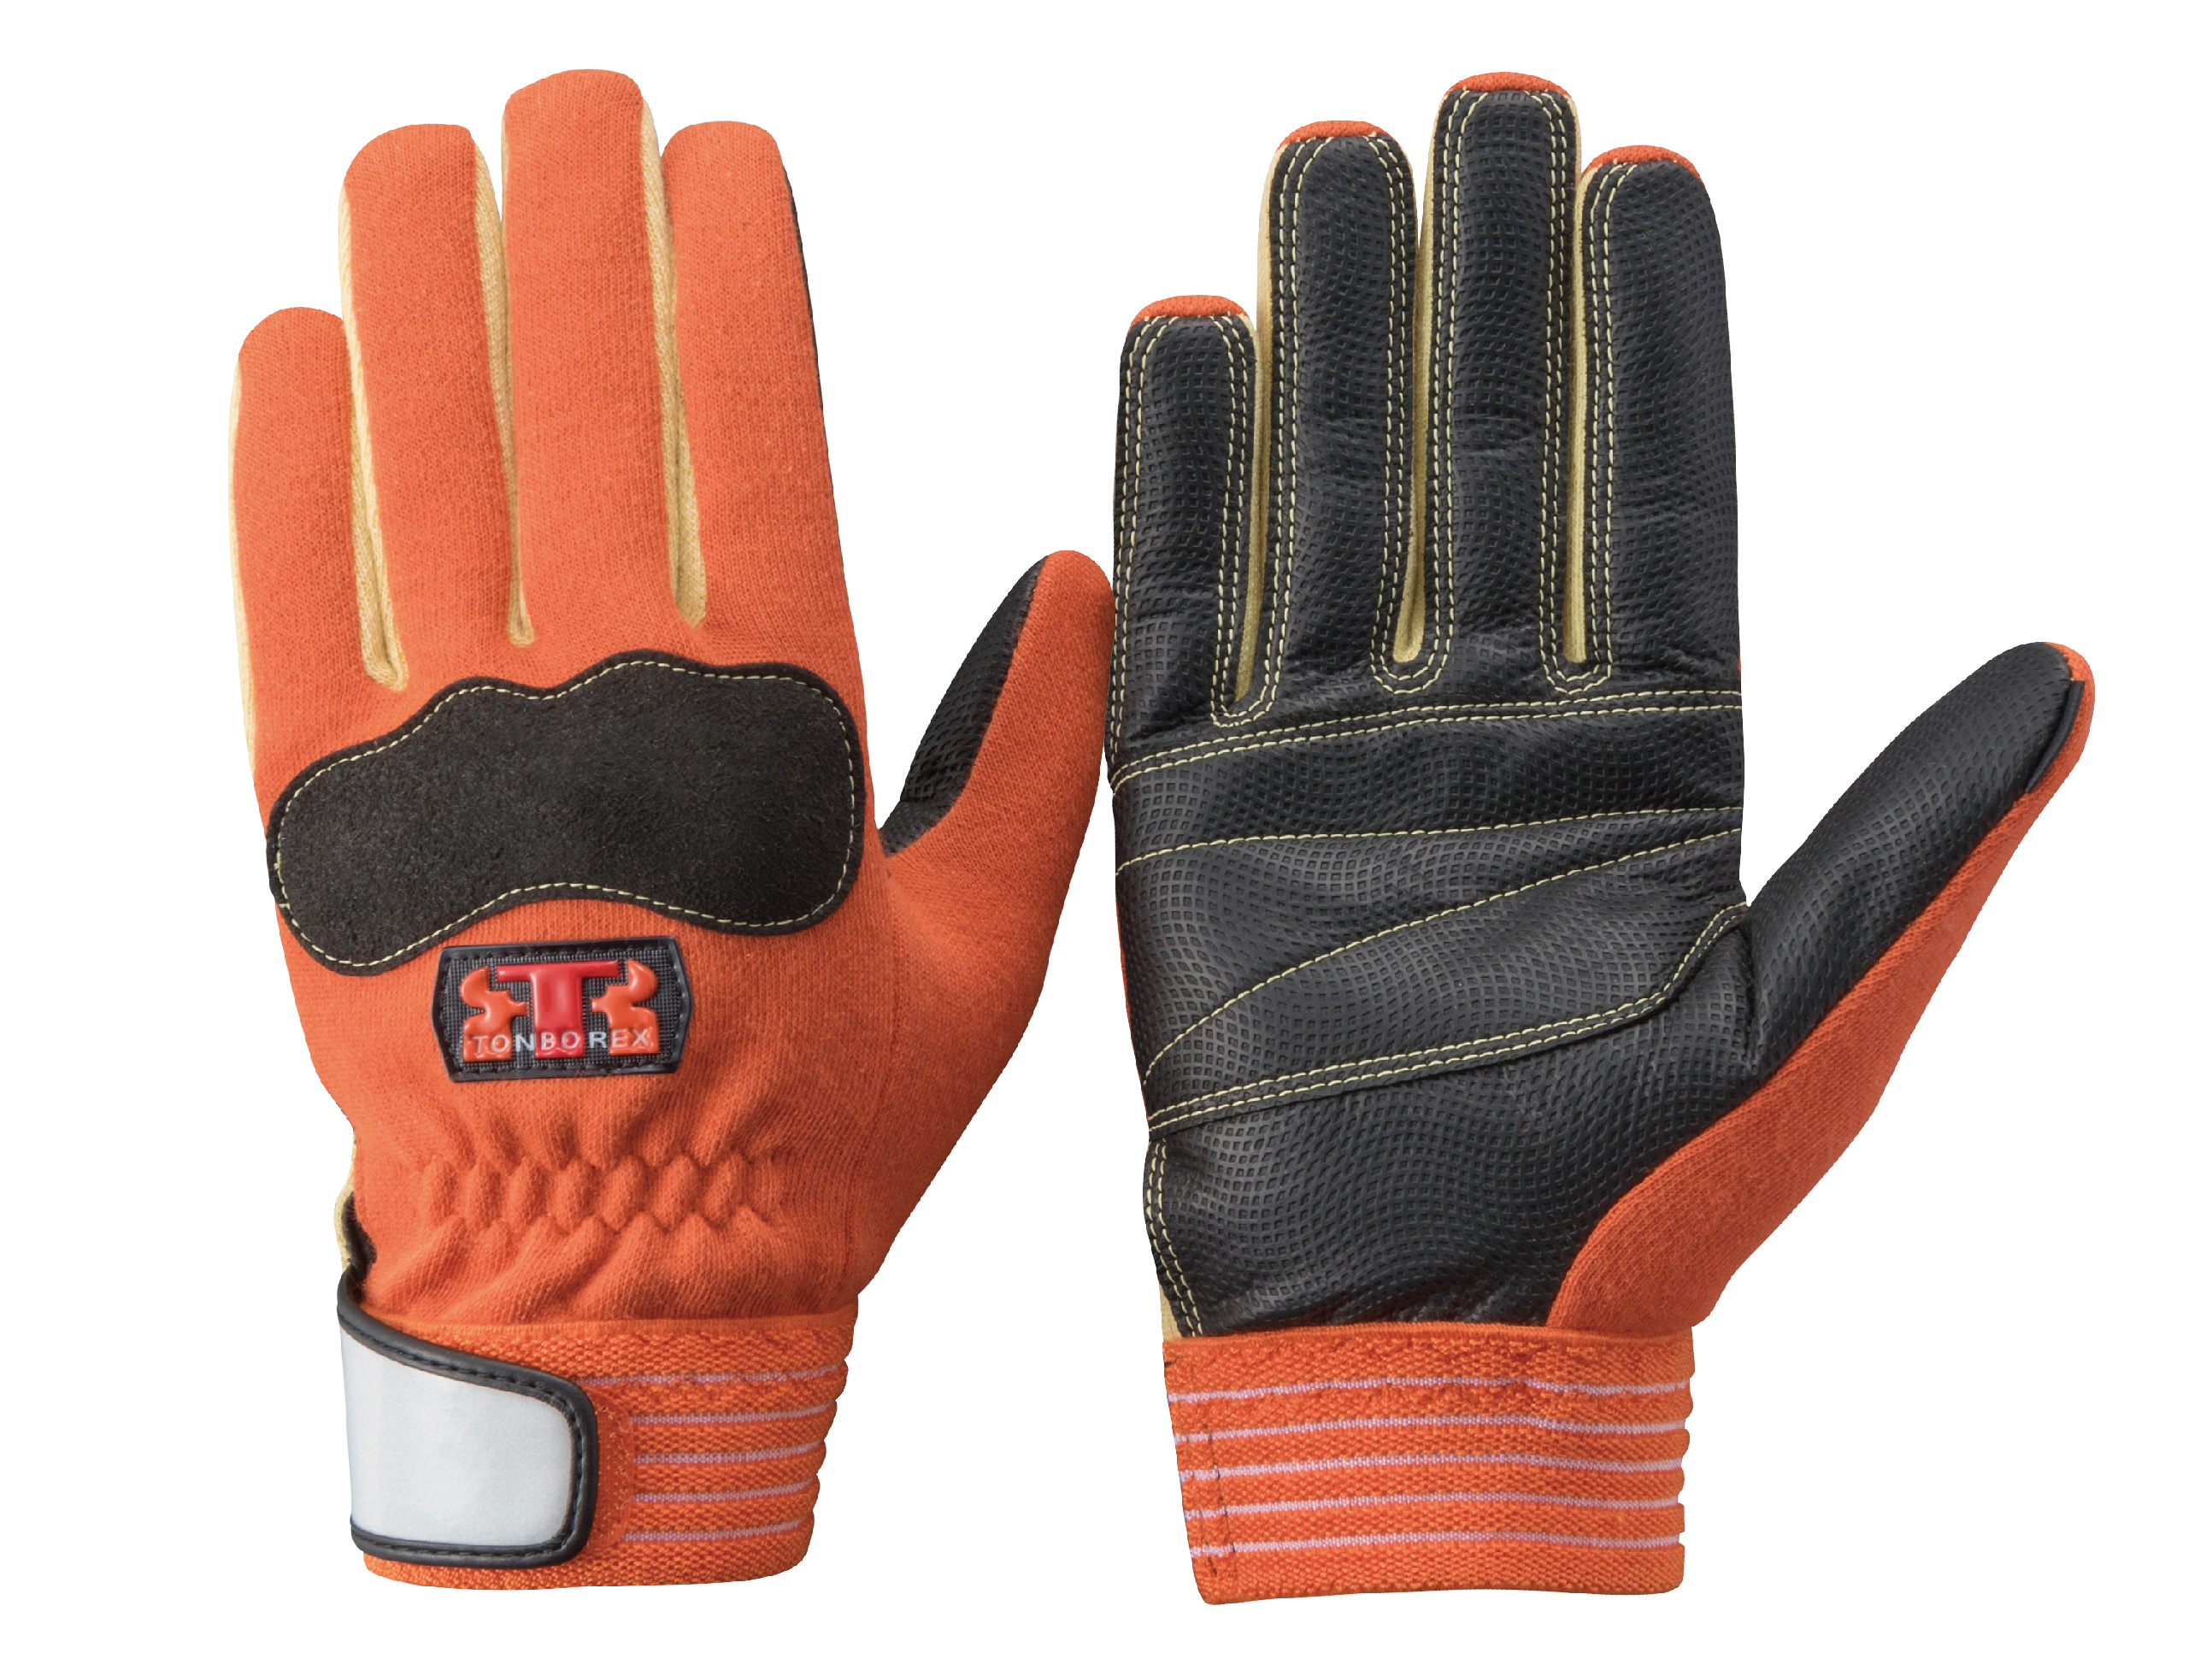 発売モデル 作業用手袋 人工皮革手袋 トンボレックス レスキューグローブ E-125R E-125NV 水洗い可能 シルバーグレー メンズ レディース 